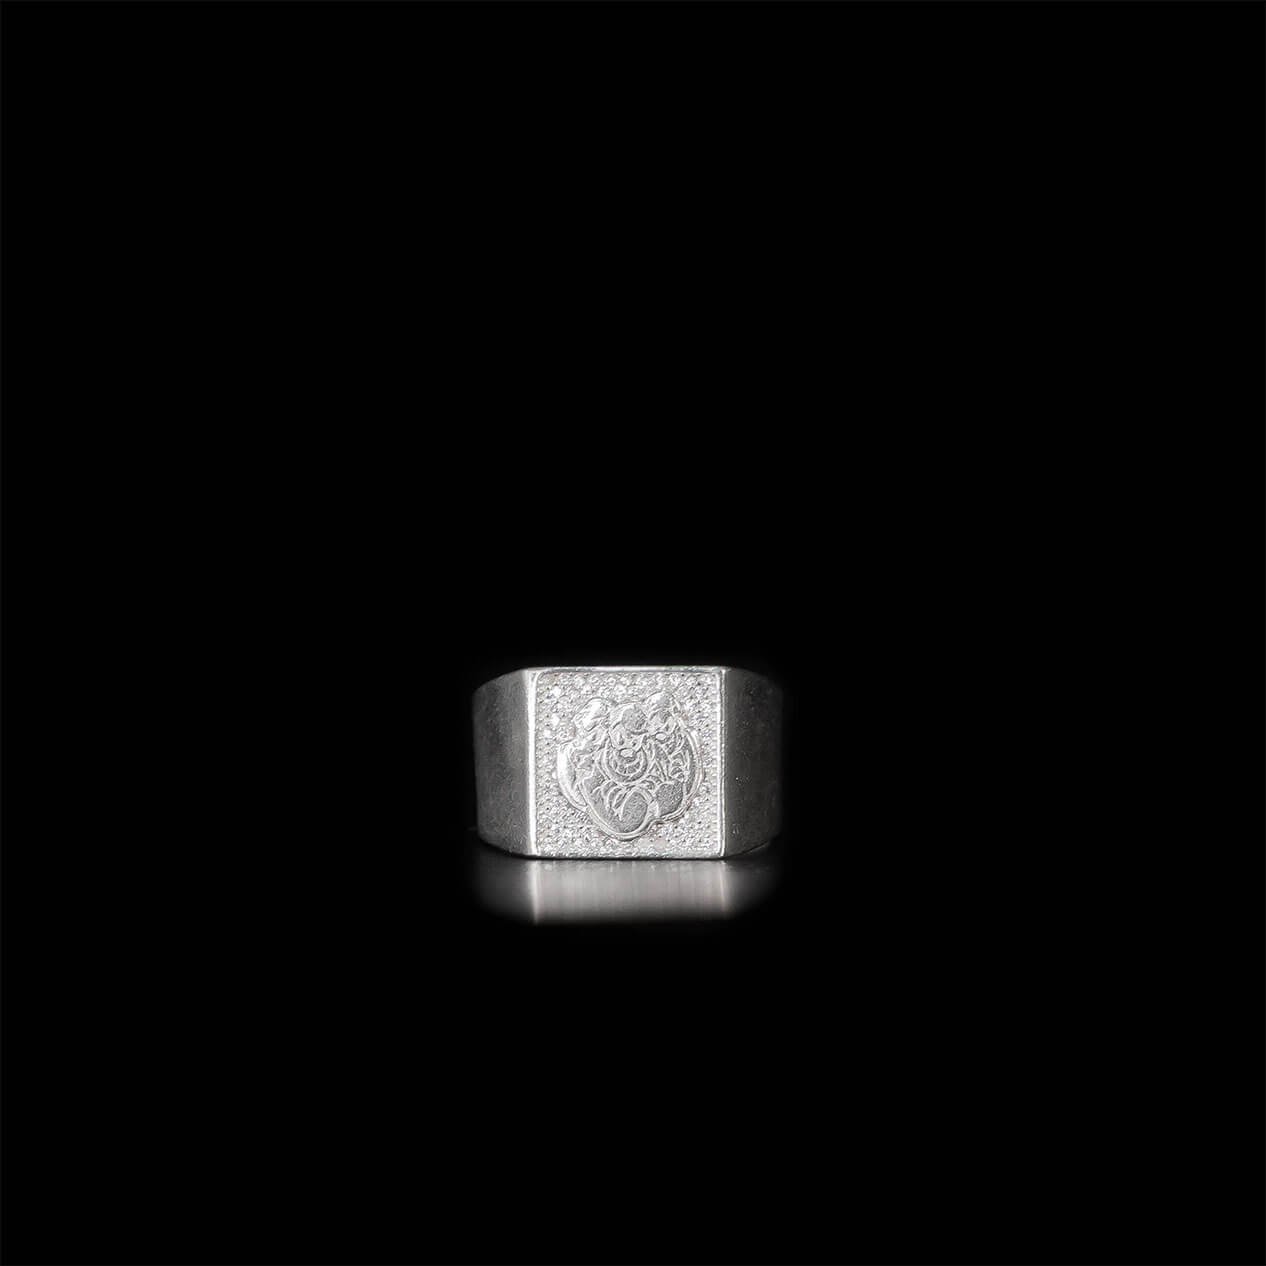 anel ice luxo masculino de prata 925. Anéis masculinos. Anel ice. anel de prata masculino. anel masculino. joias masculinas. anel de formatura masculino.